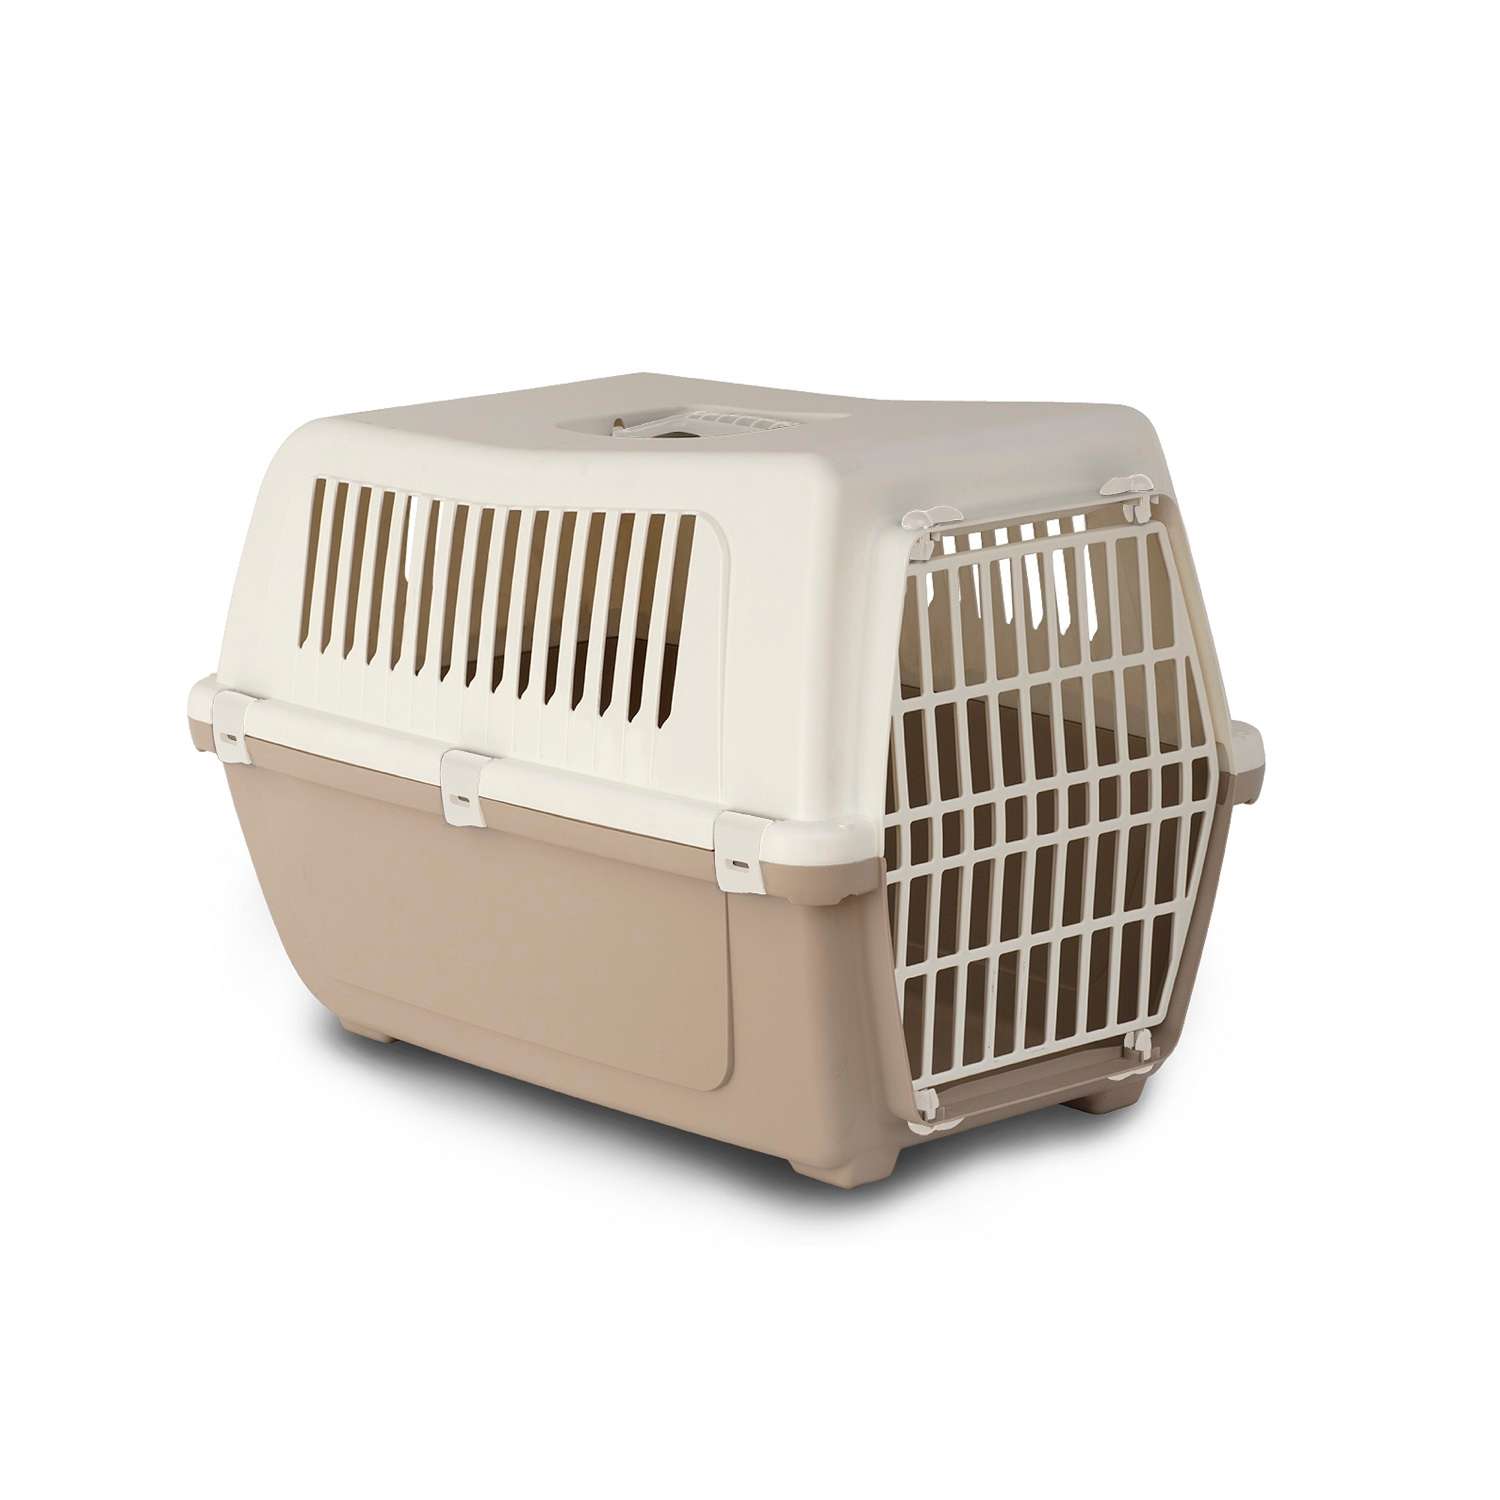 Переноска для животных L Lilli Pet контейнер для собак мелких и средних пород транспортный бокс перевозка 54*35*38 см мокко - фото 1